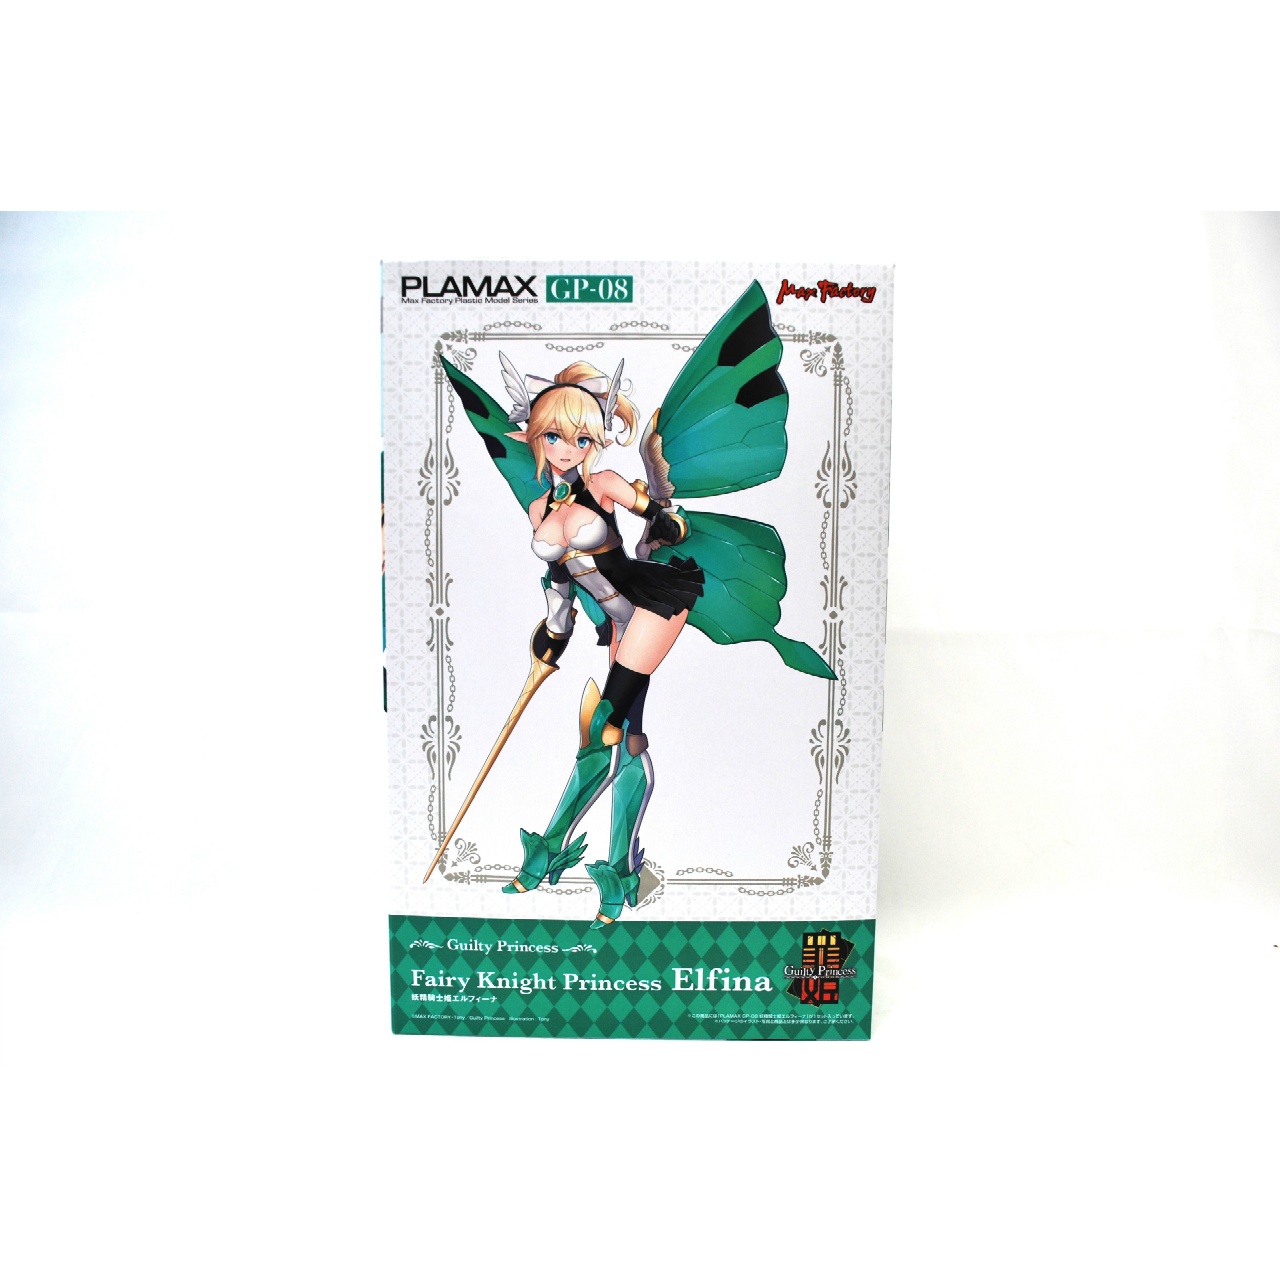 PLAMAX GP-08 妖精騎士姫 エルフィーナ (ギルティプリンセス)